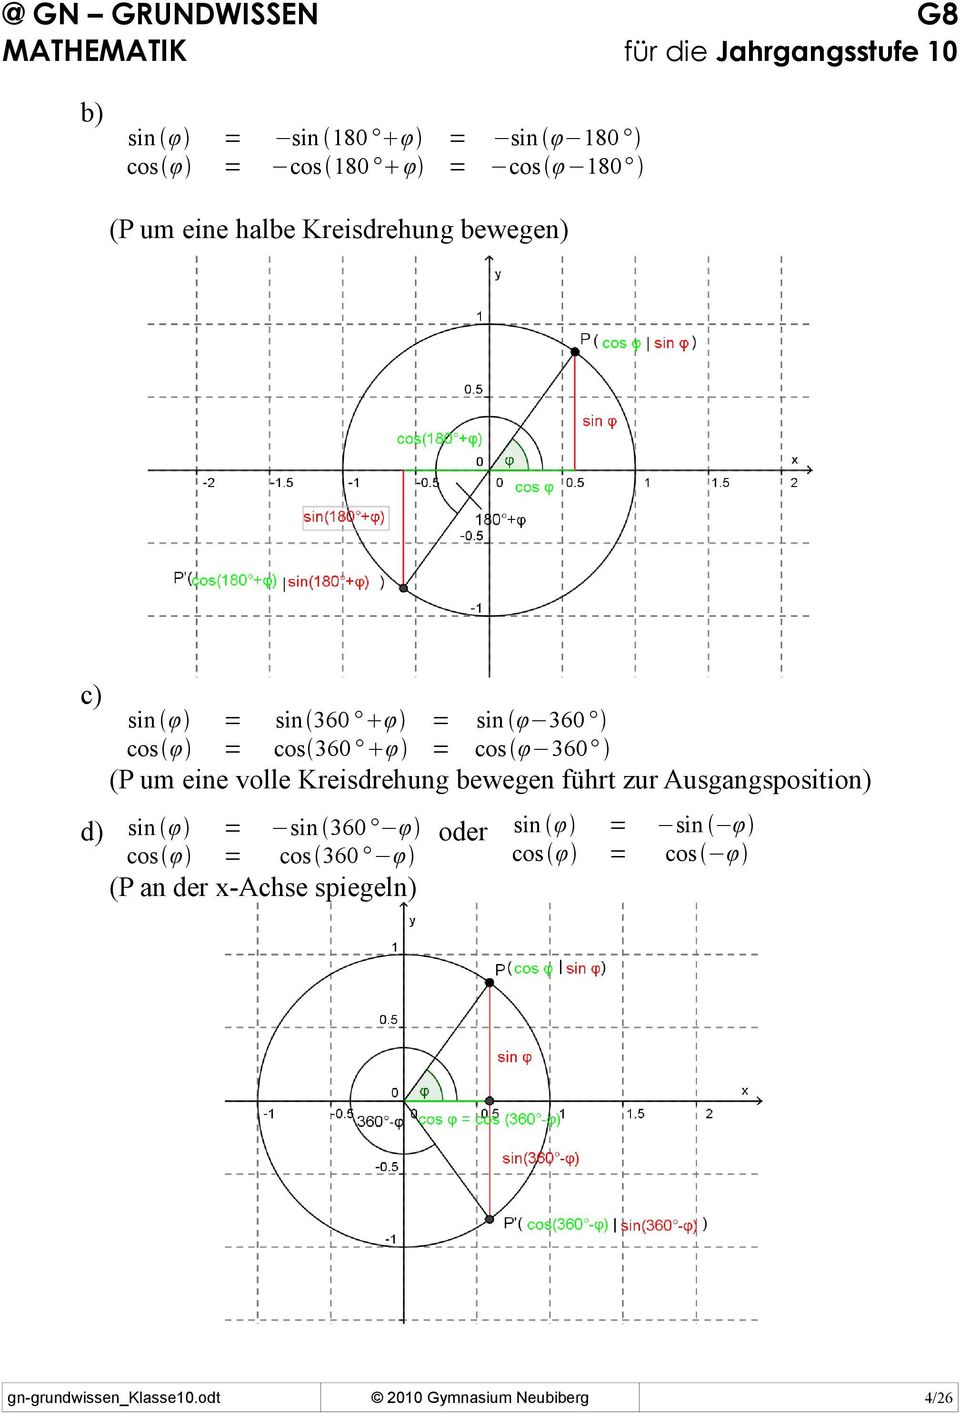 (P um eine volle Kreisdrehung bewegen führt zur Ausgangsposition) d) sin φ